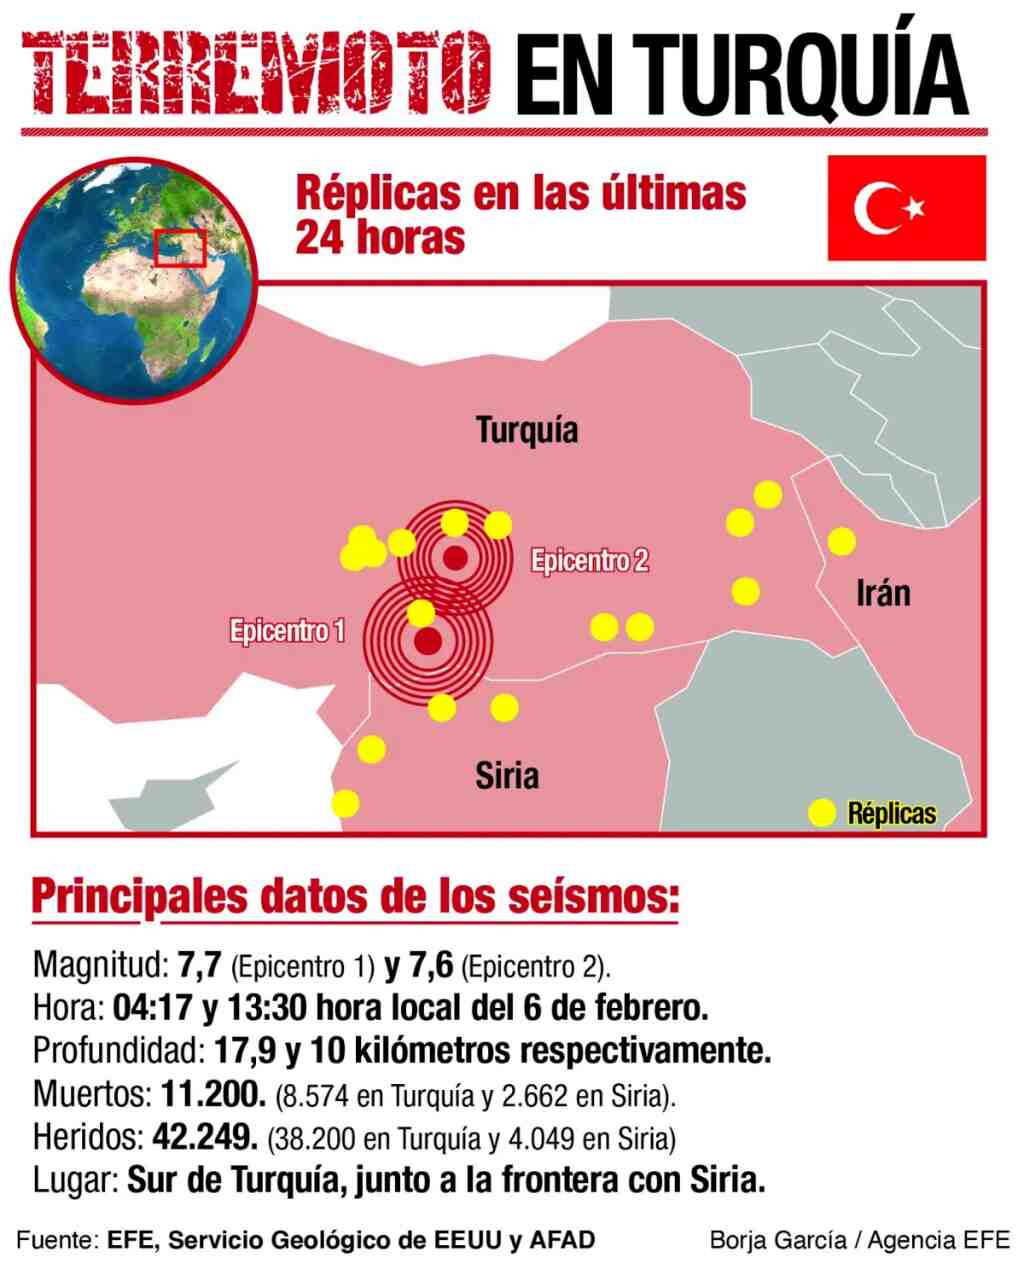 Más de 11200 muertos en Turquía y Siria por los terremotos 2